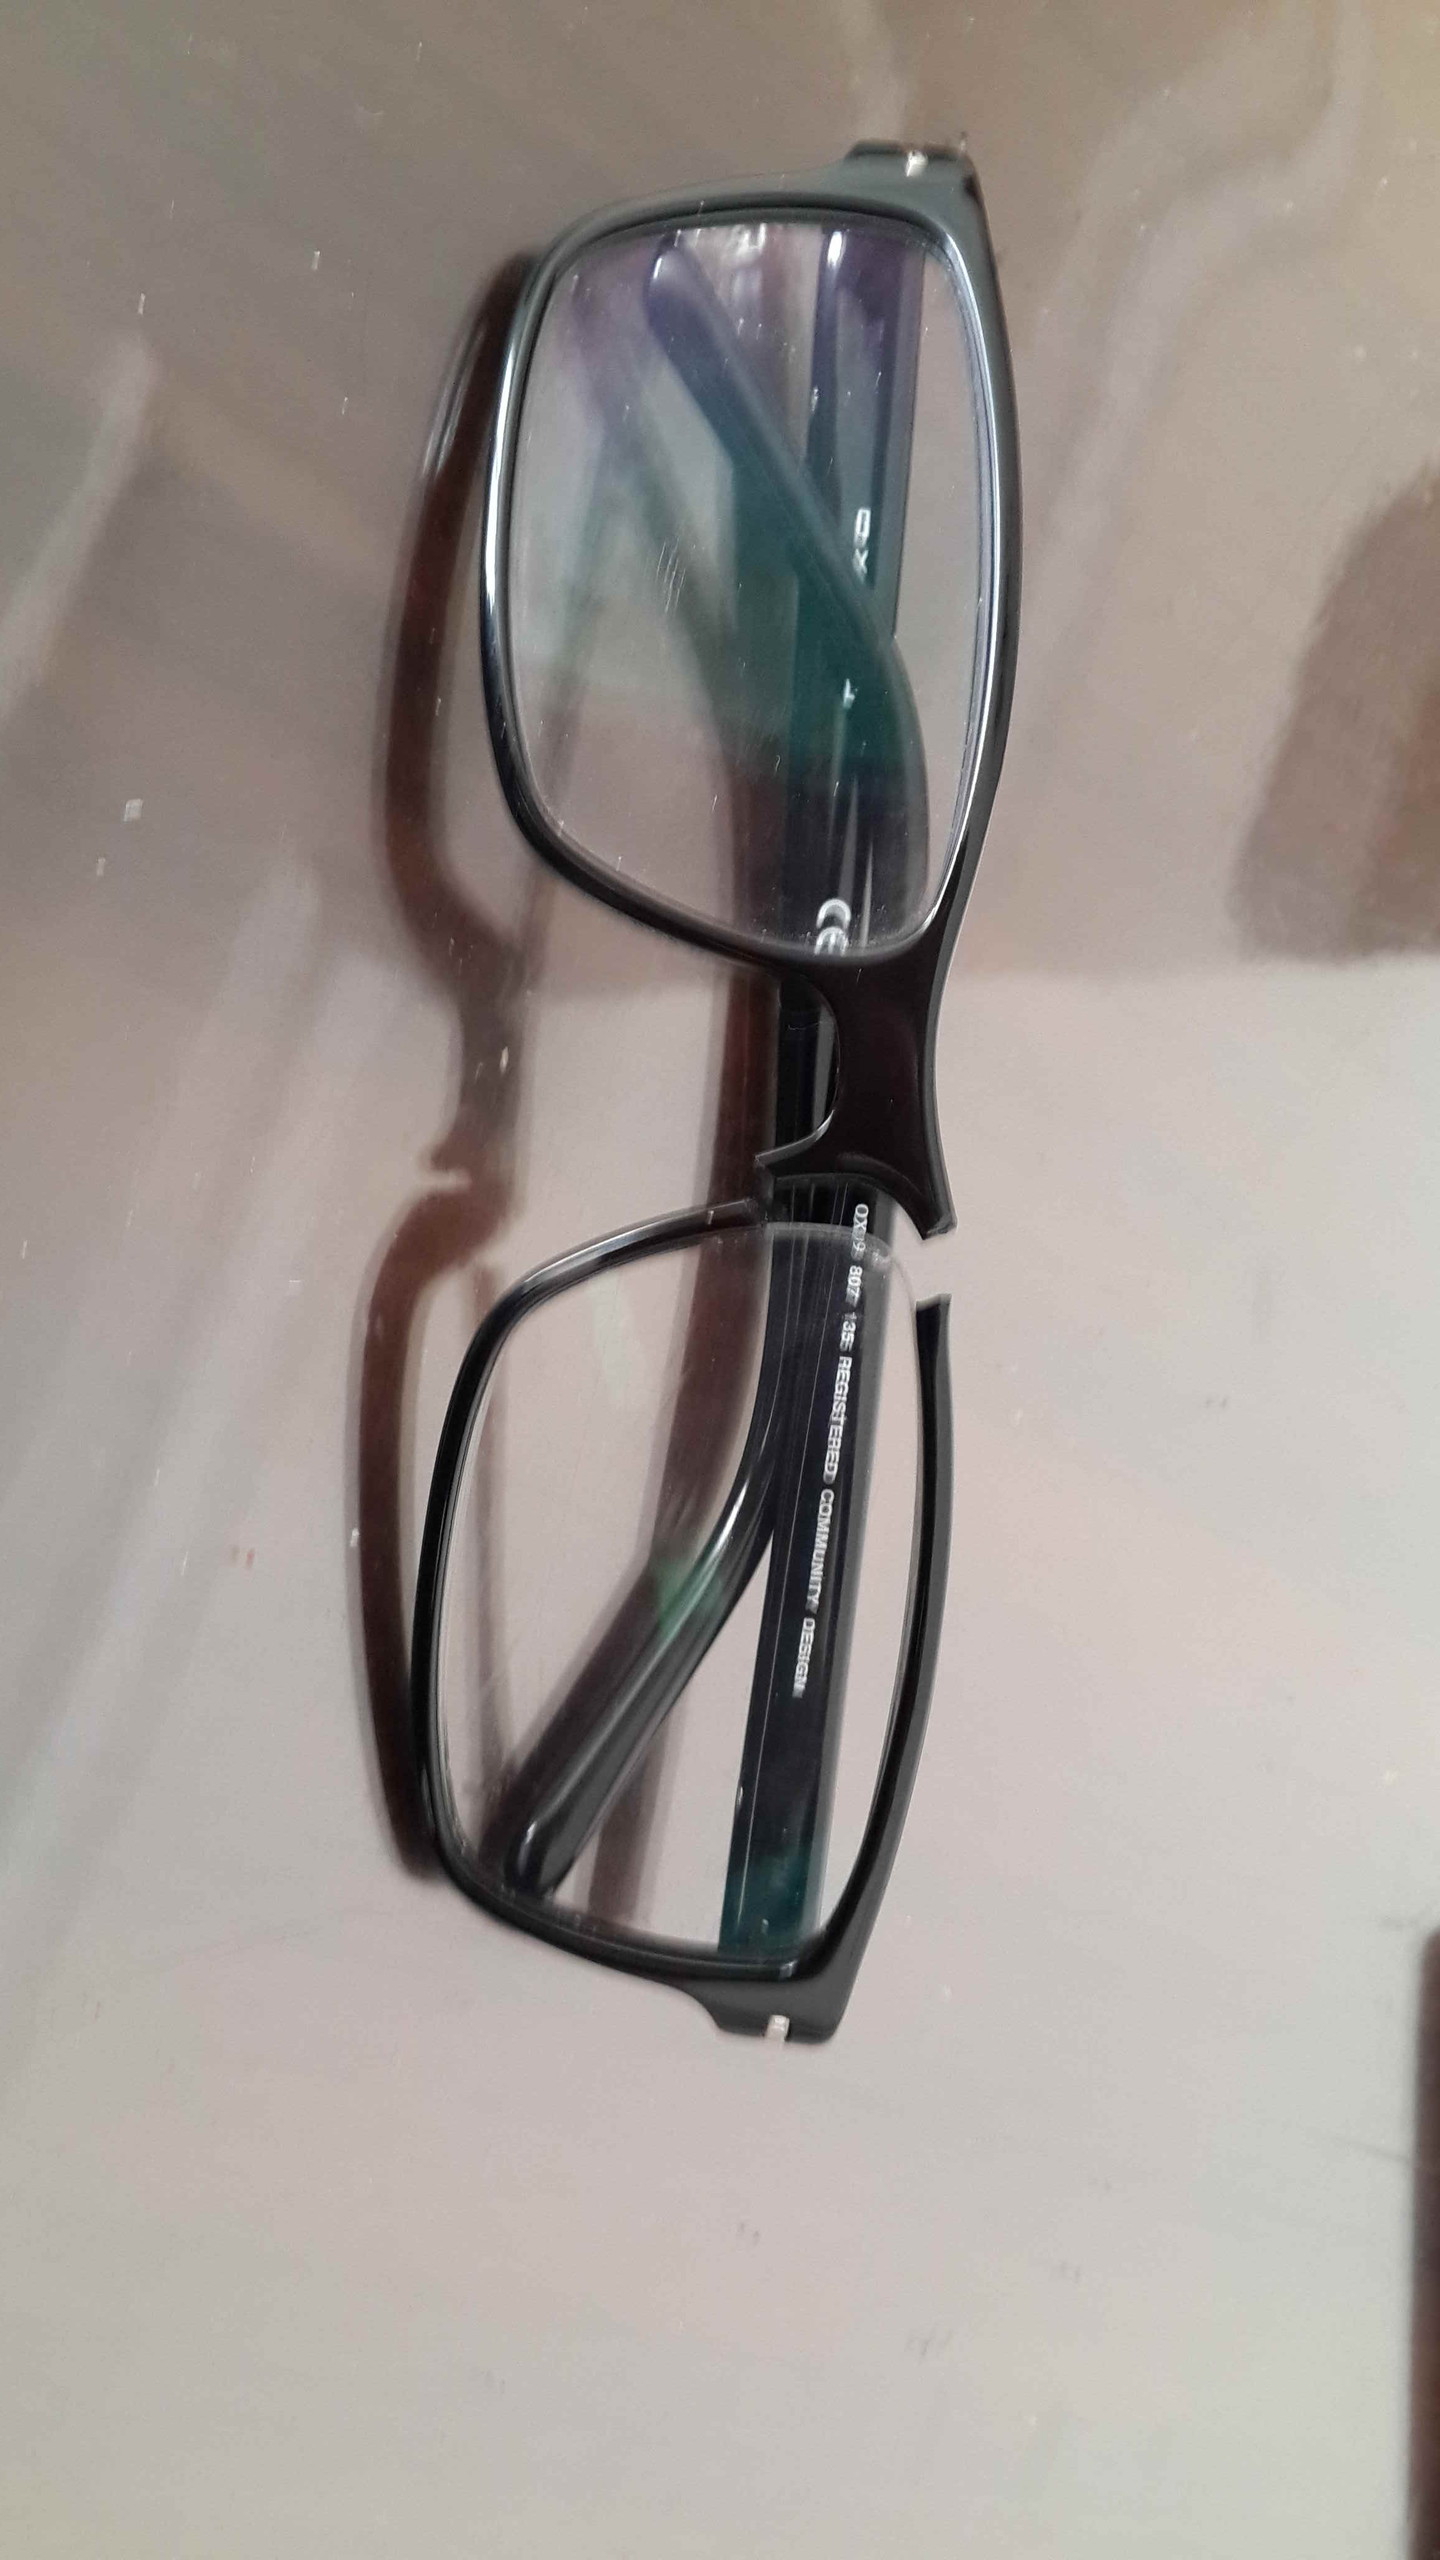 Bu gözlüğü nasıl tamir ederim?